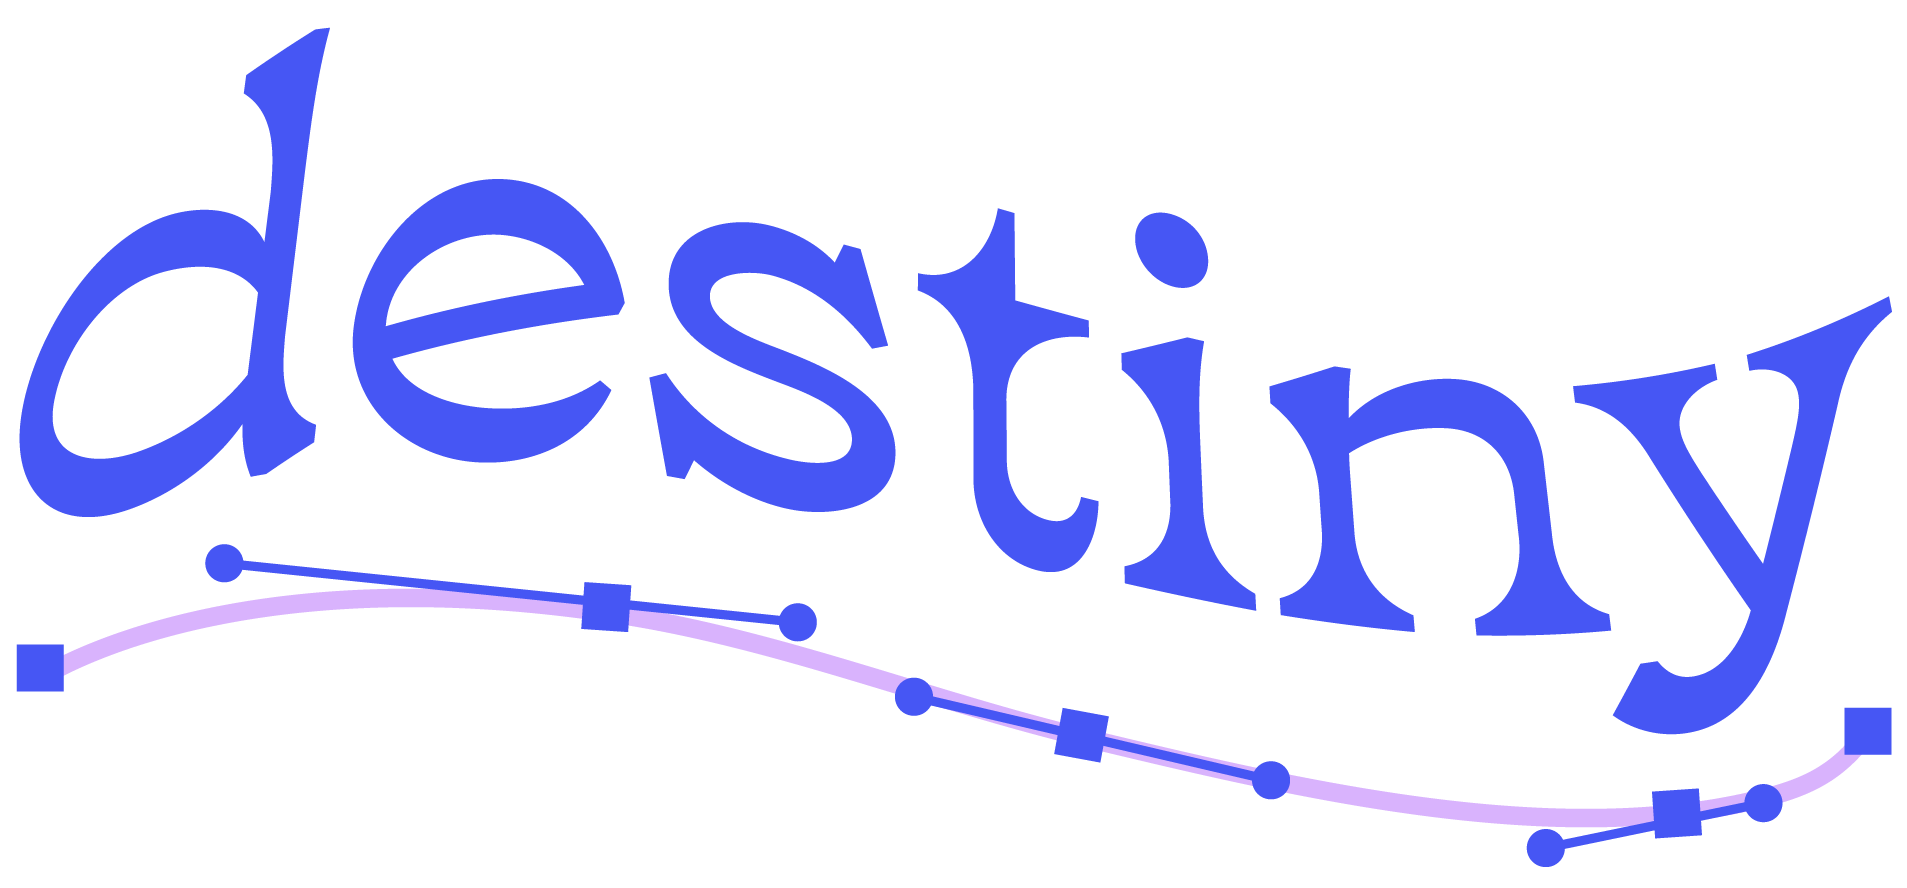 the name destiny in cursive